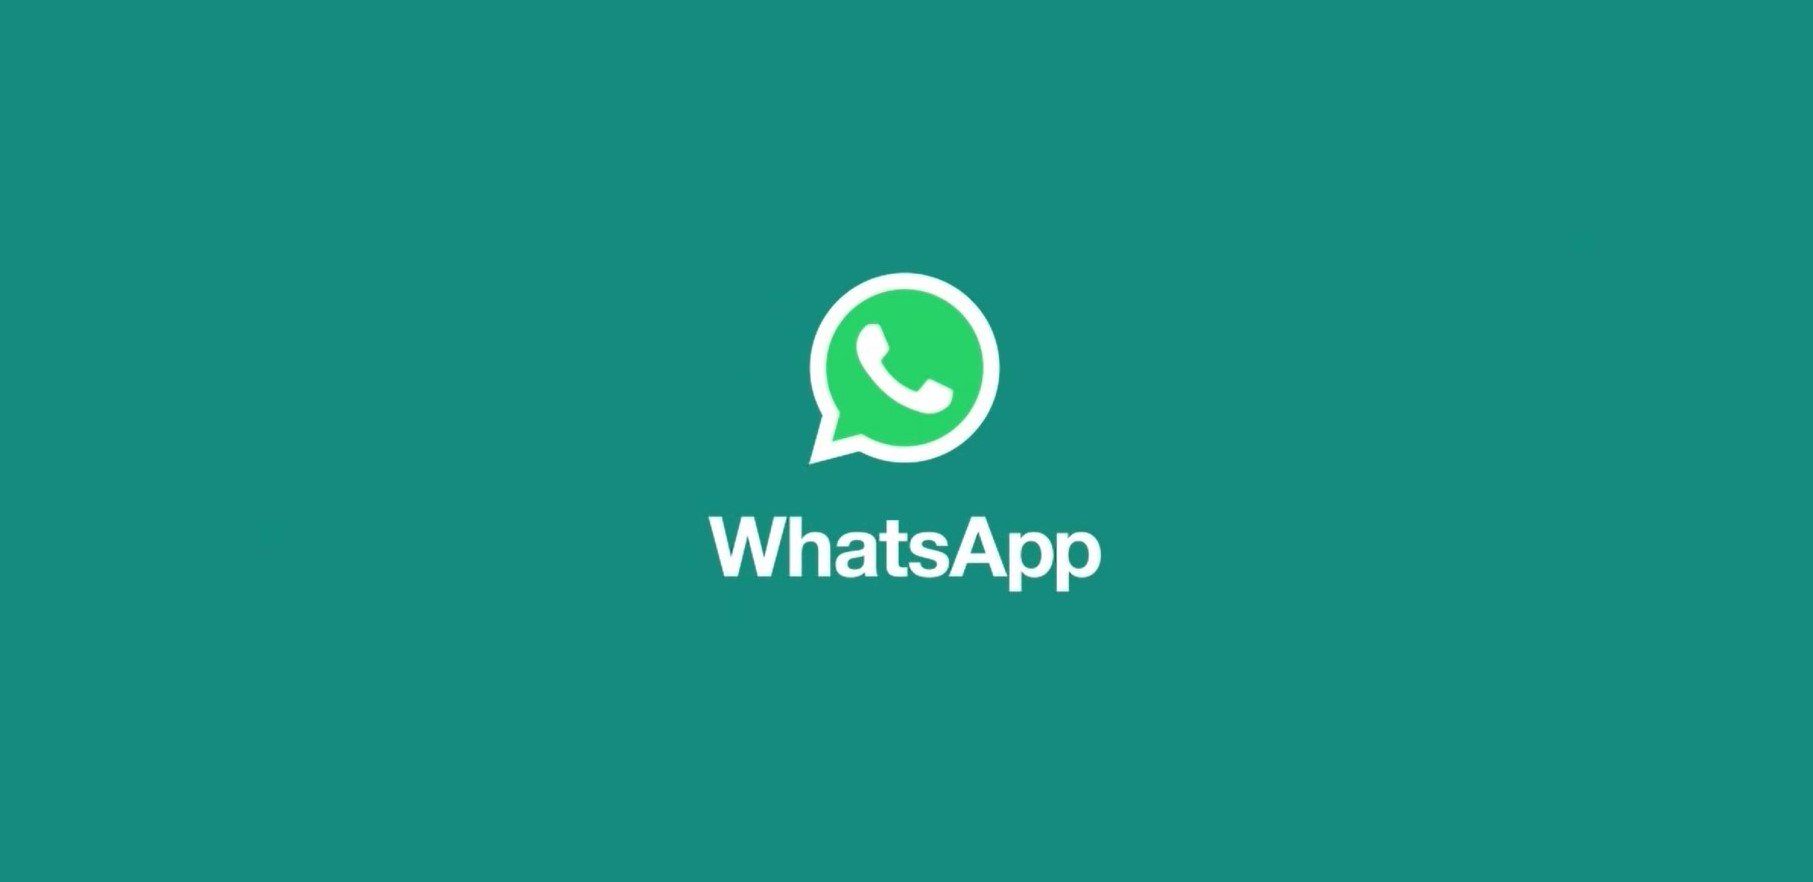 Es bleibt immer weniger Zeit, Änderungen in WhatsApp zu akzeptieren. Bleibst du oder suchst du etwas anderes? 47